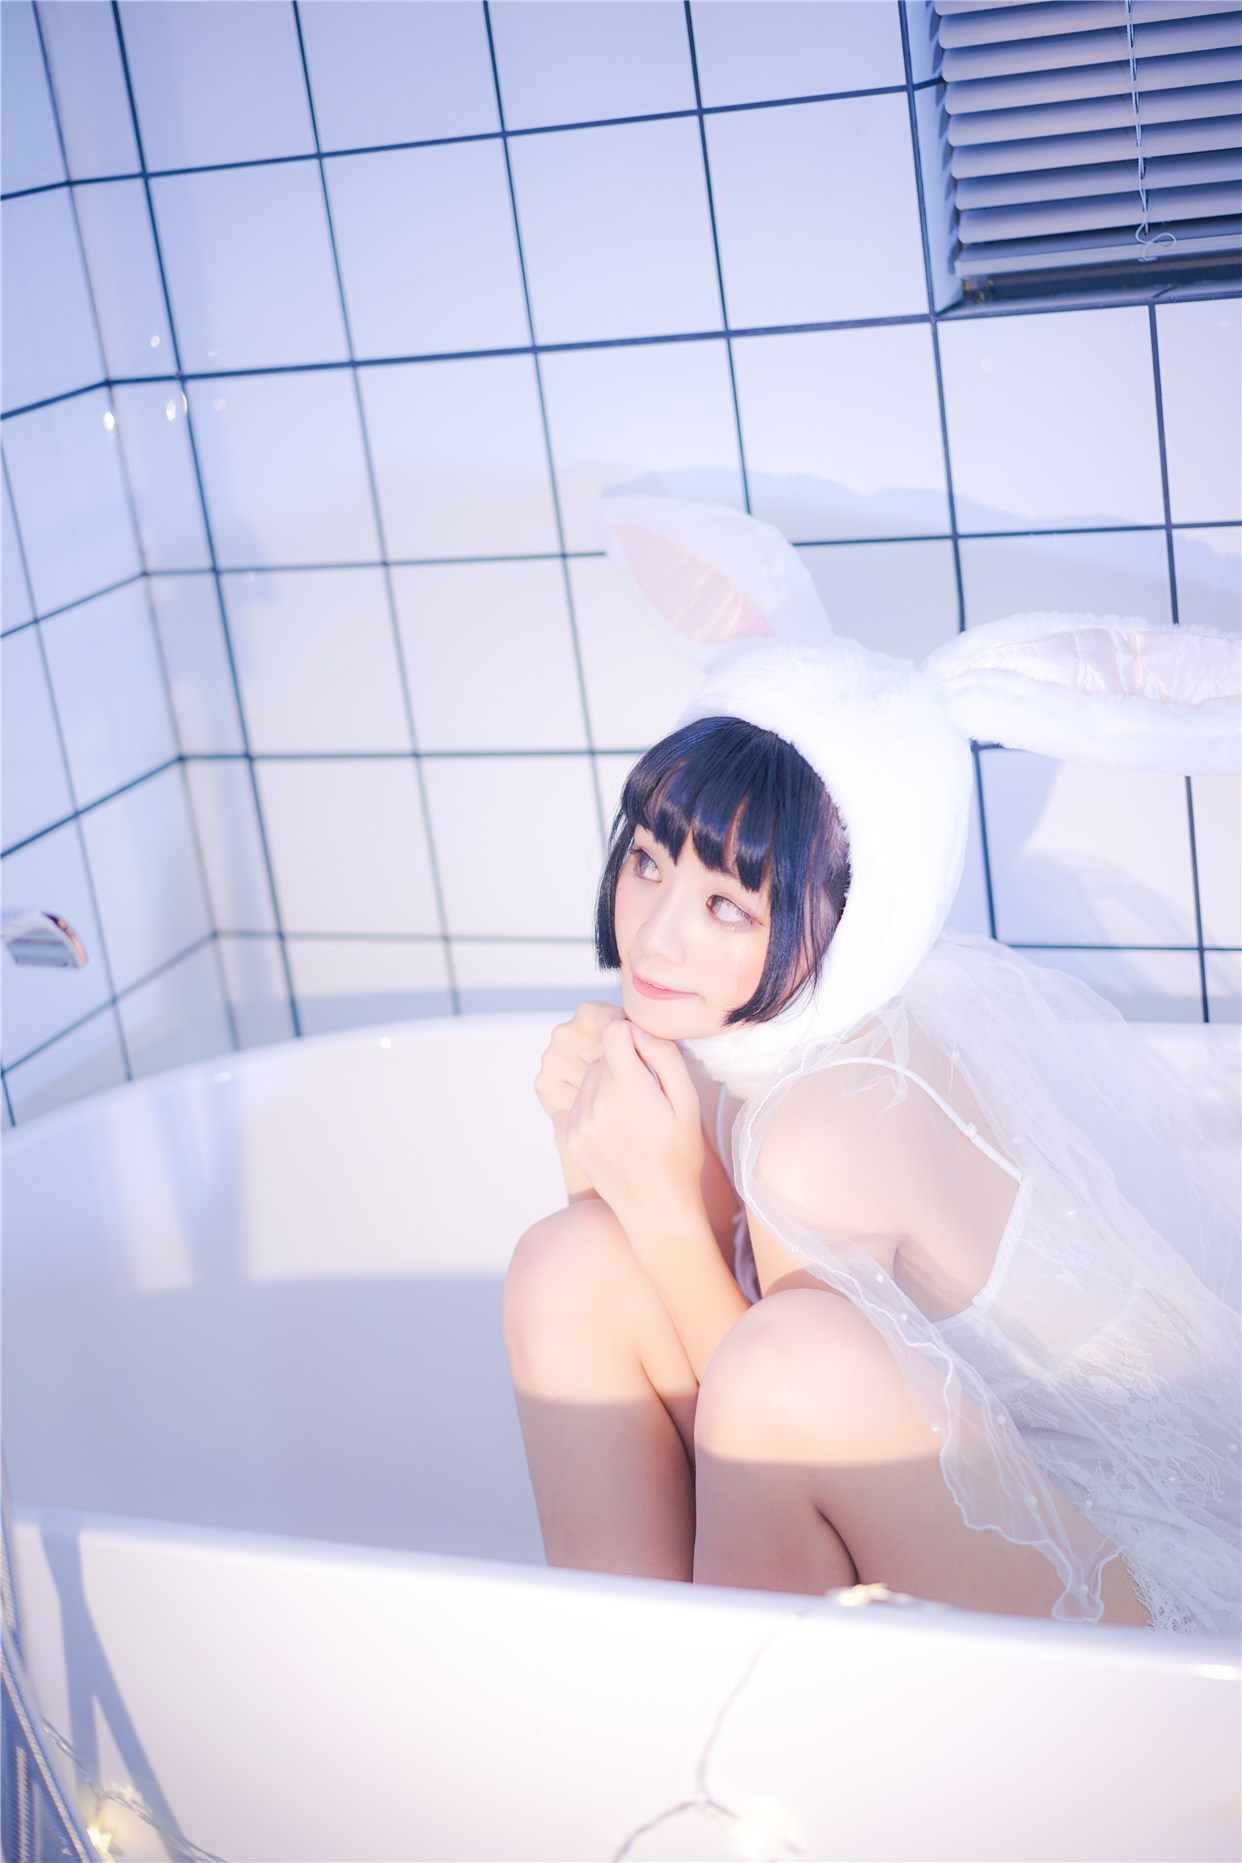 【兔玩映画】浴缸里的兔子 兔玩映画 第38张